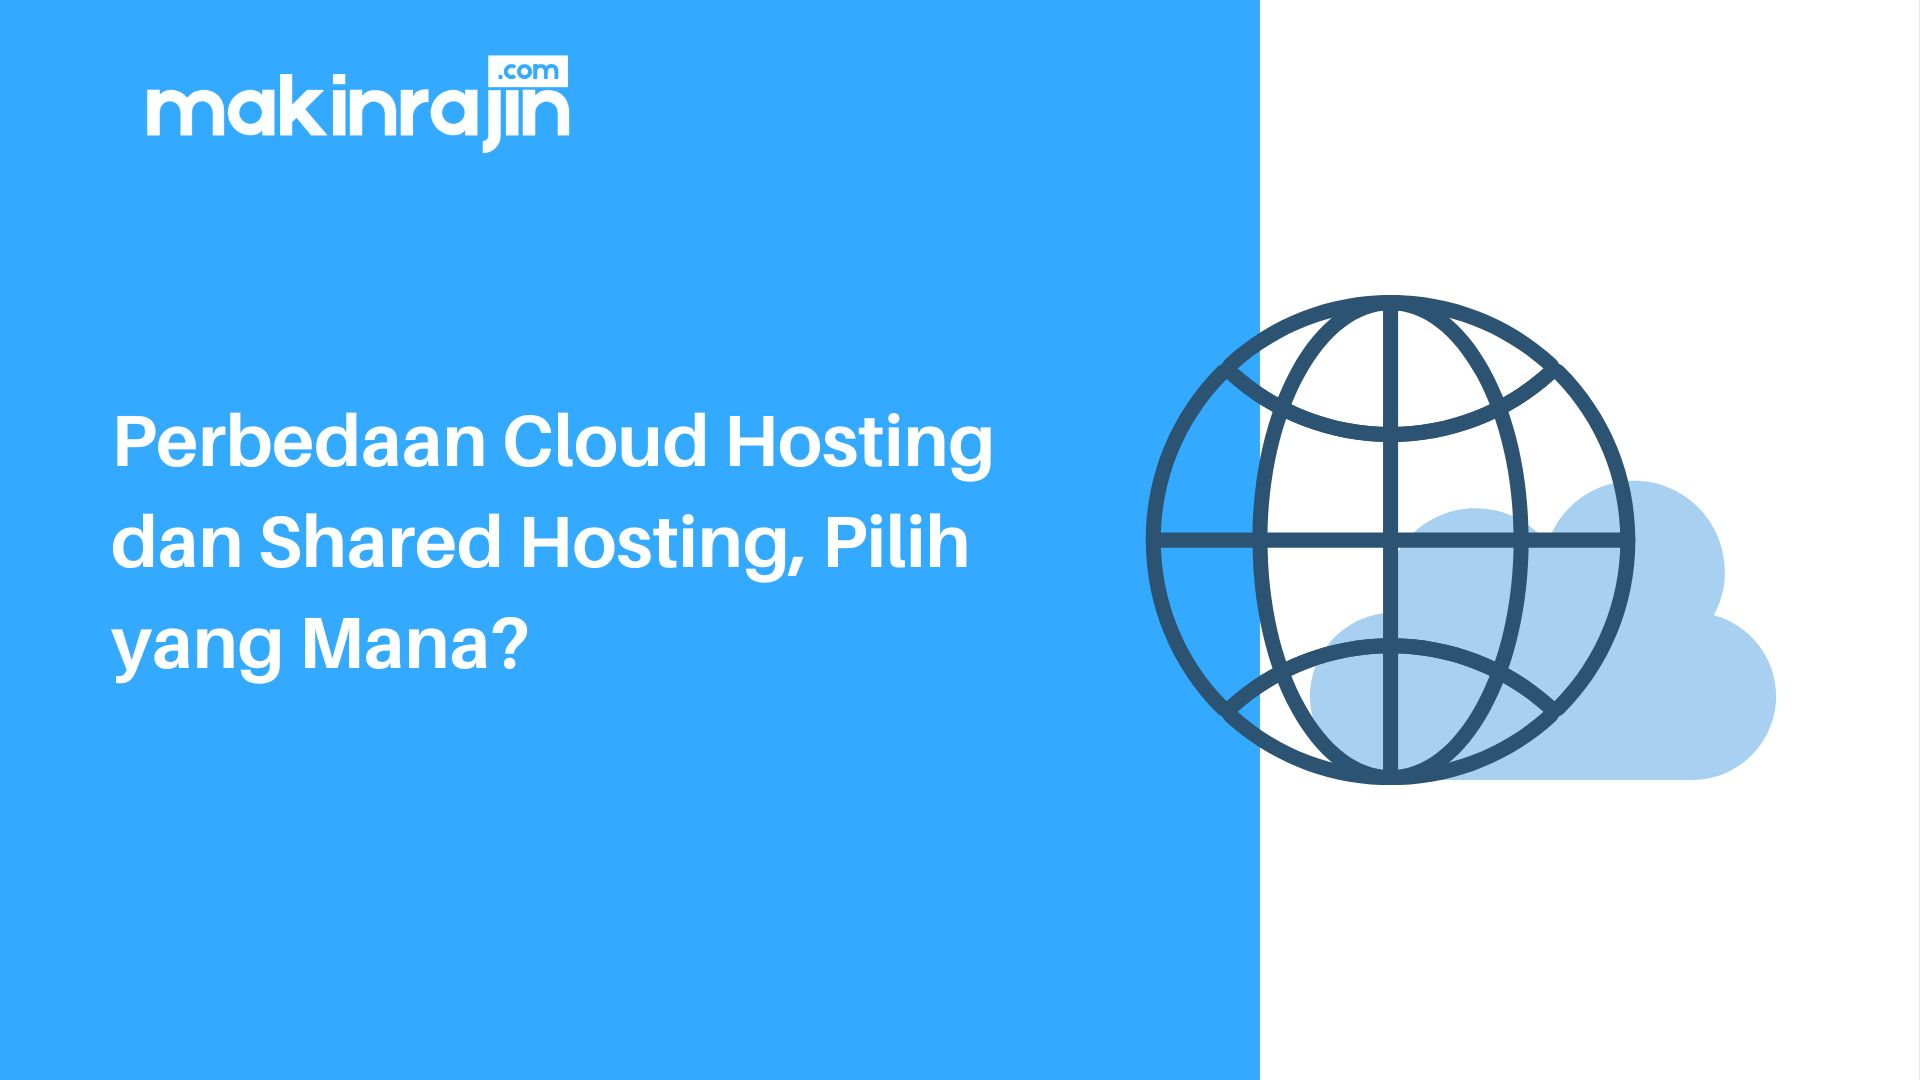 Perbedaan Cloud Hosting dan Shared Hosting, Pilih yang Mana?